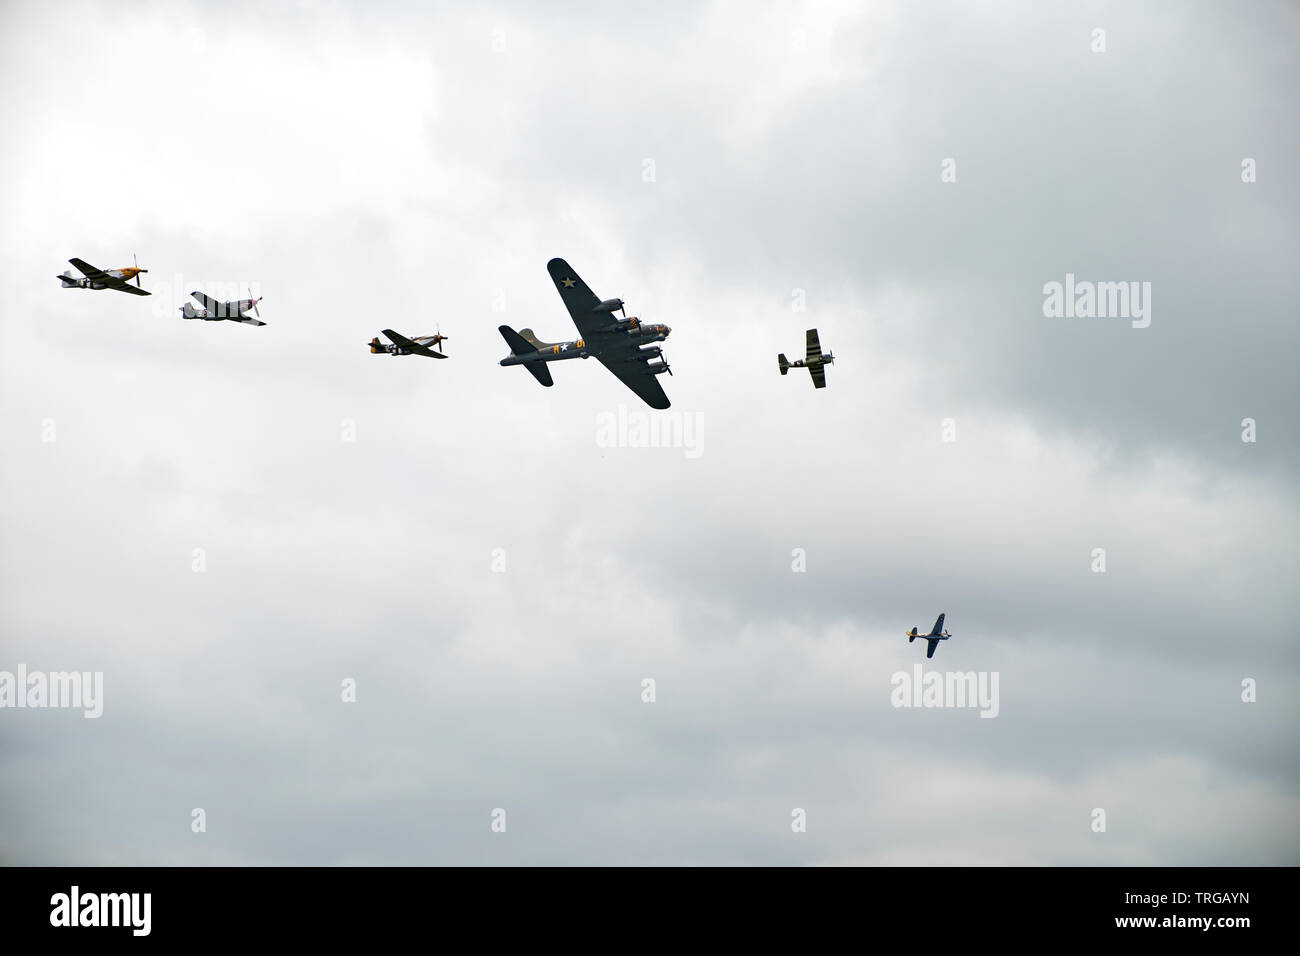 usaf-p-51-mustangs-mit-d-day-invasion-streifen-in-formation-fliegen-mit-b17-flying-fortress-in-duxford-trgayn.jpg